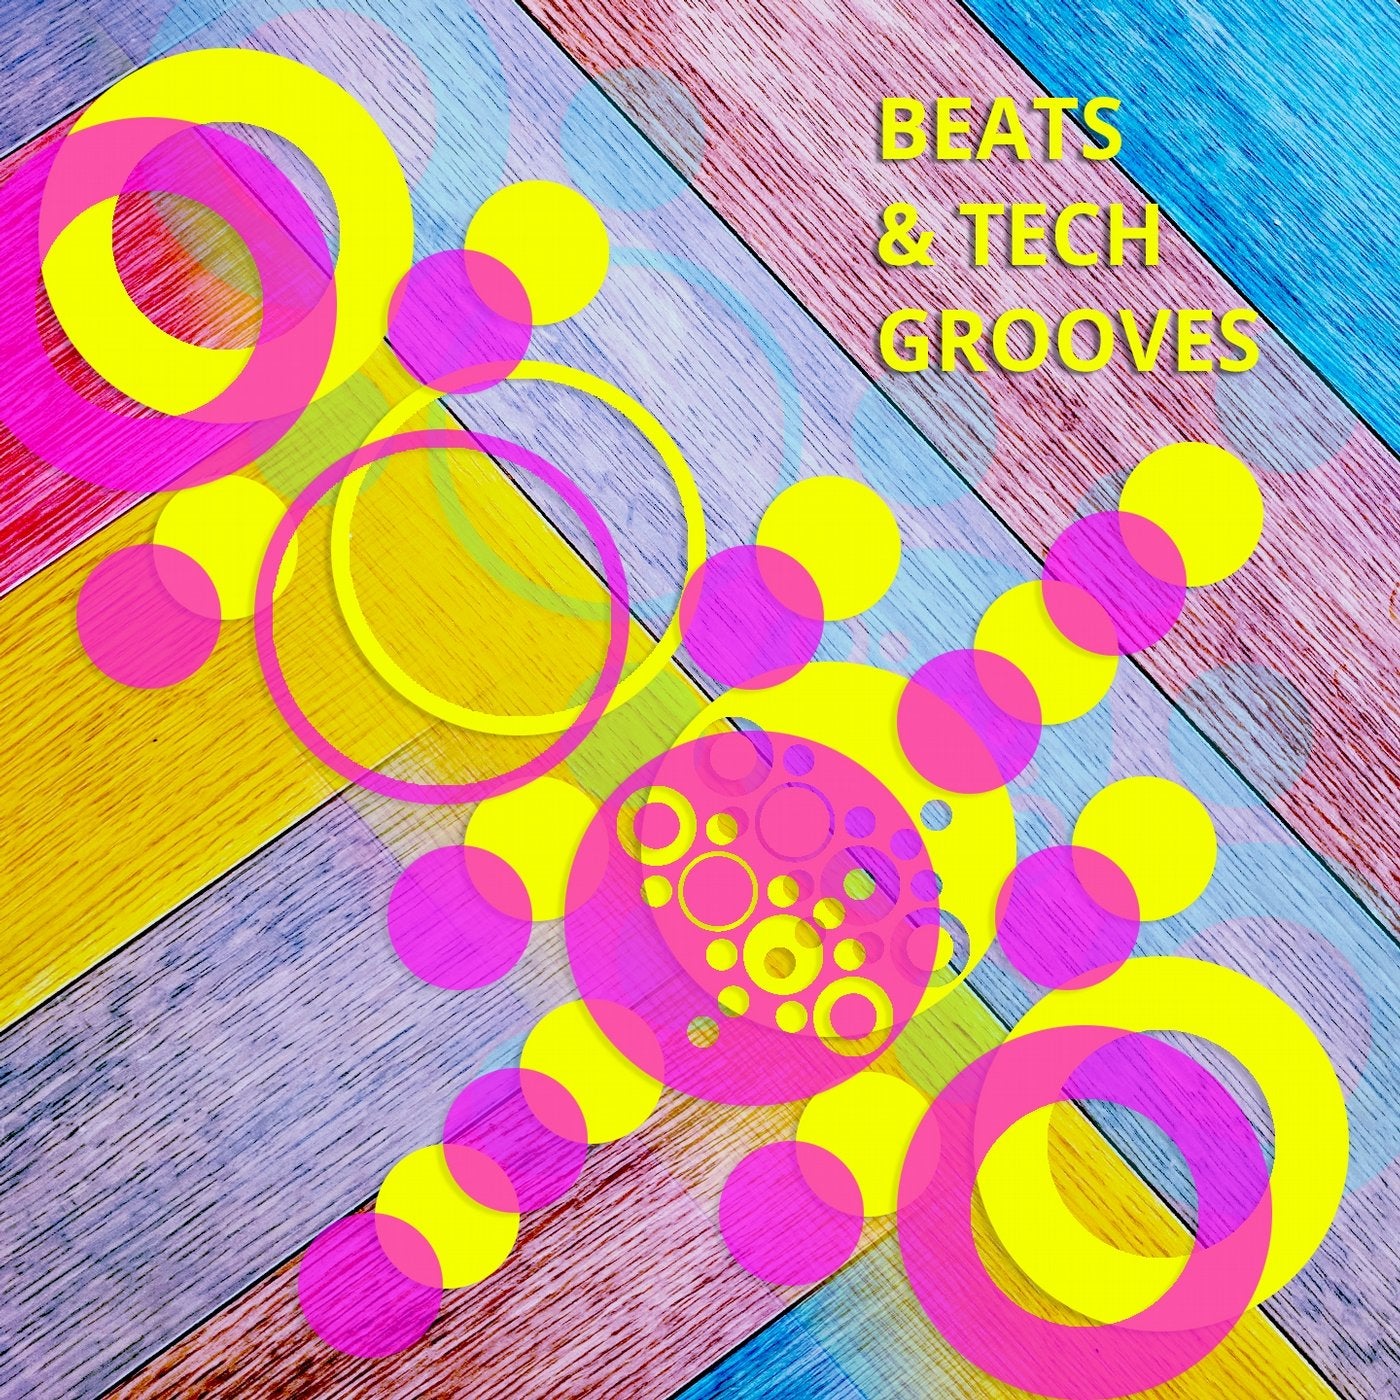 Beats & Tech Grooves